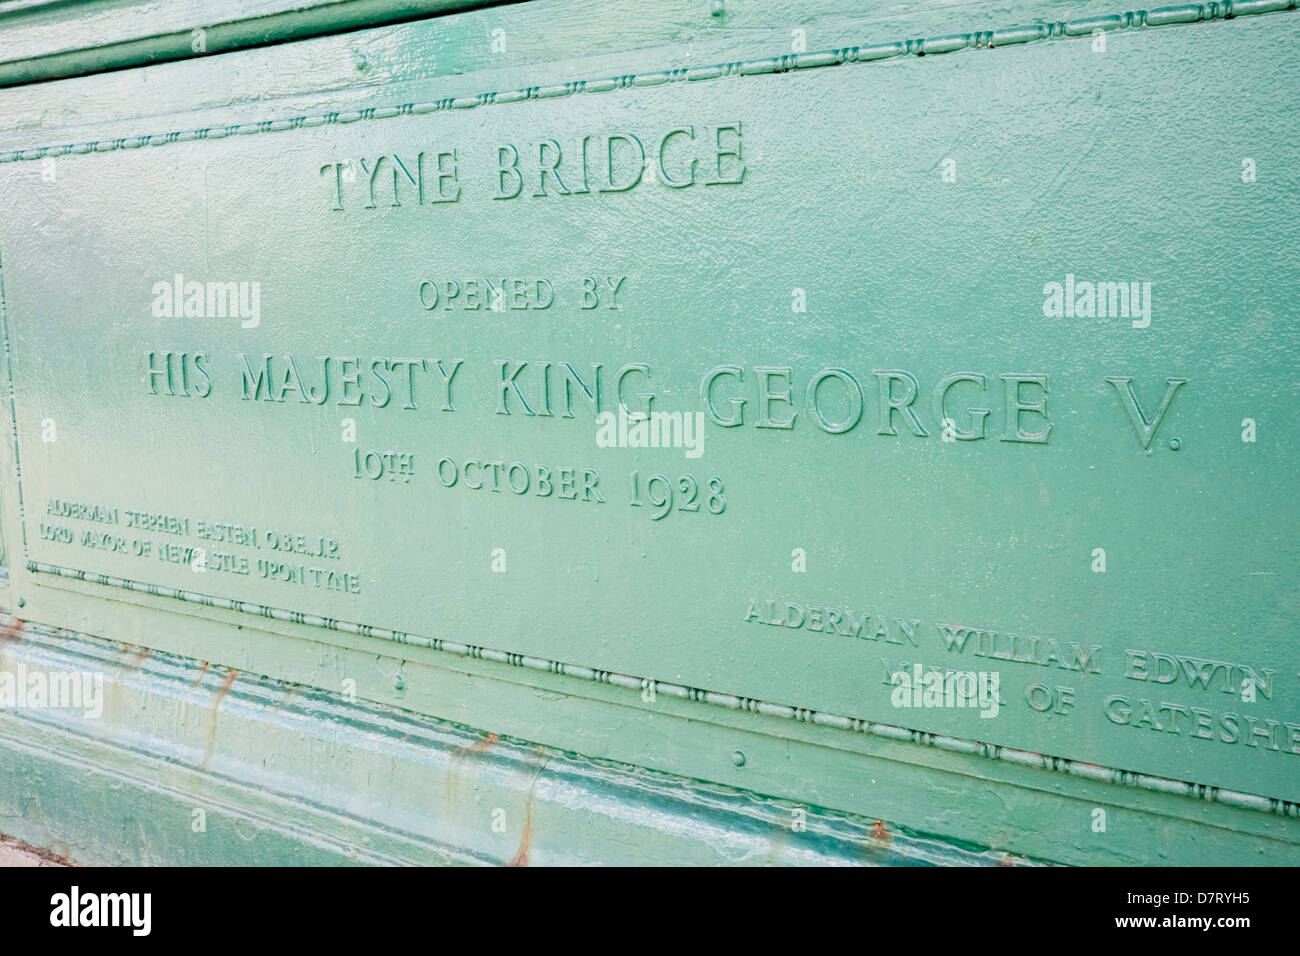 Tyne Bridge di placca di apertura. Inaugurato dal Re Giorgio V il 10 ottobre 1928 Foto Stock